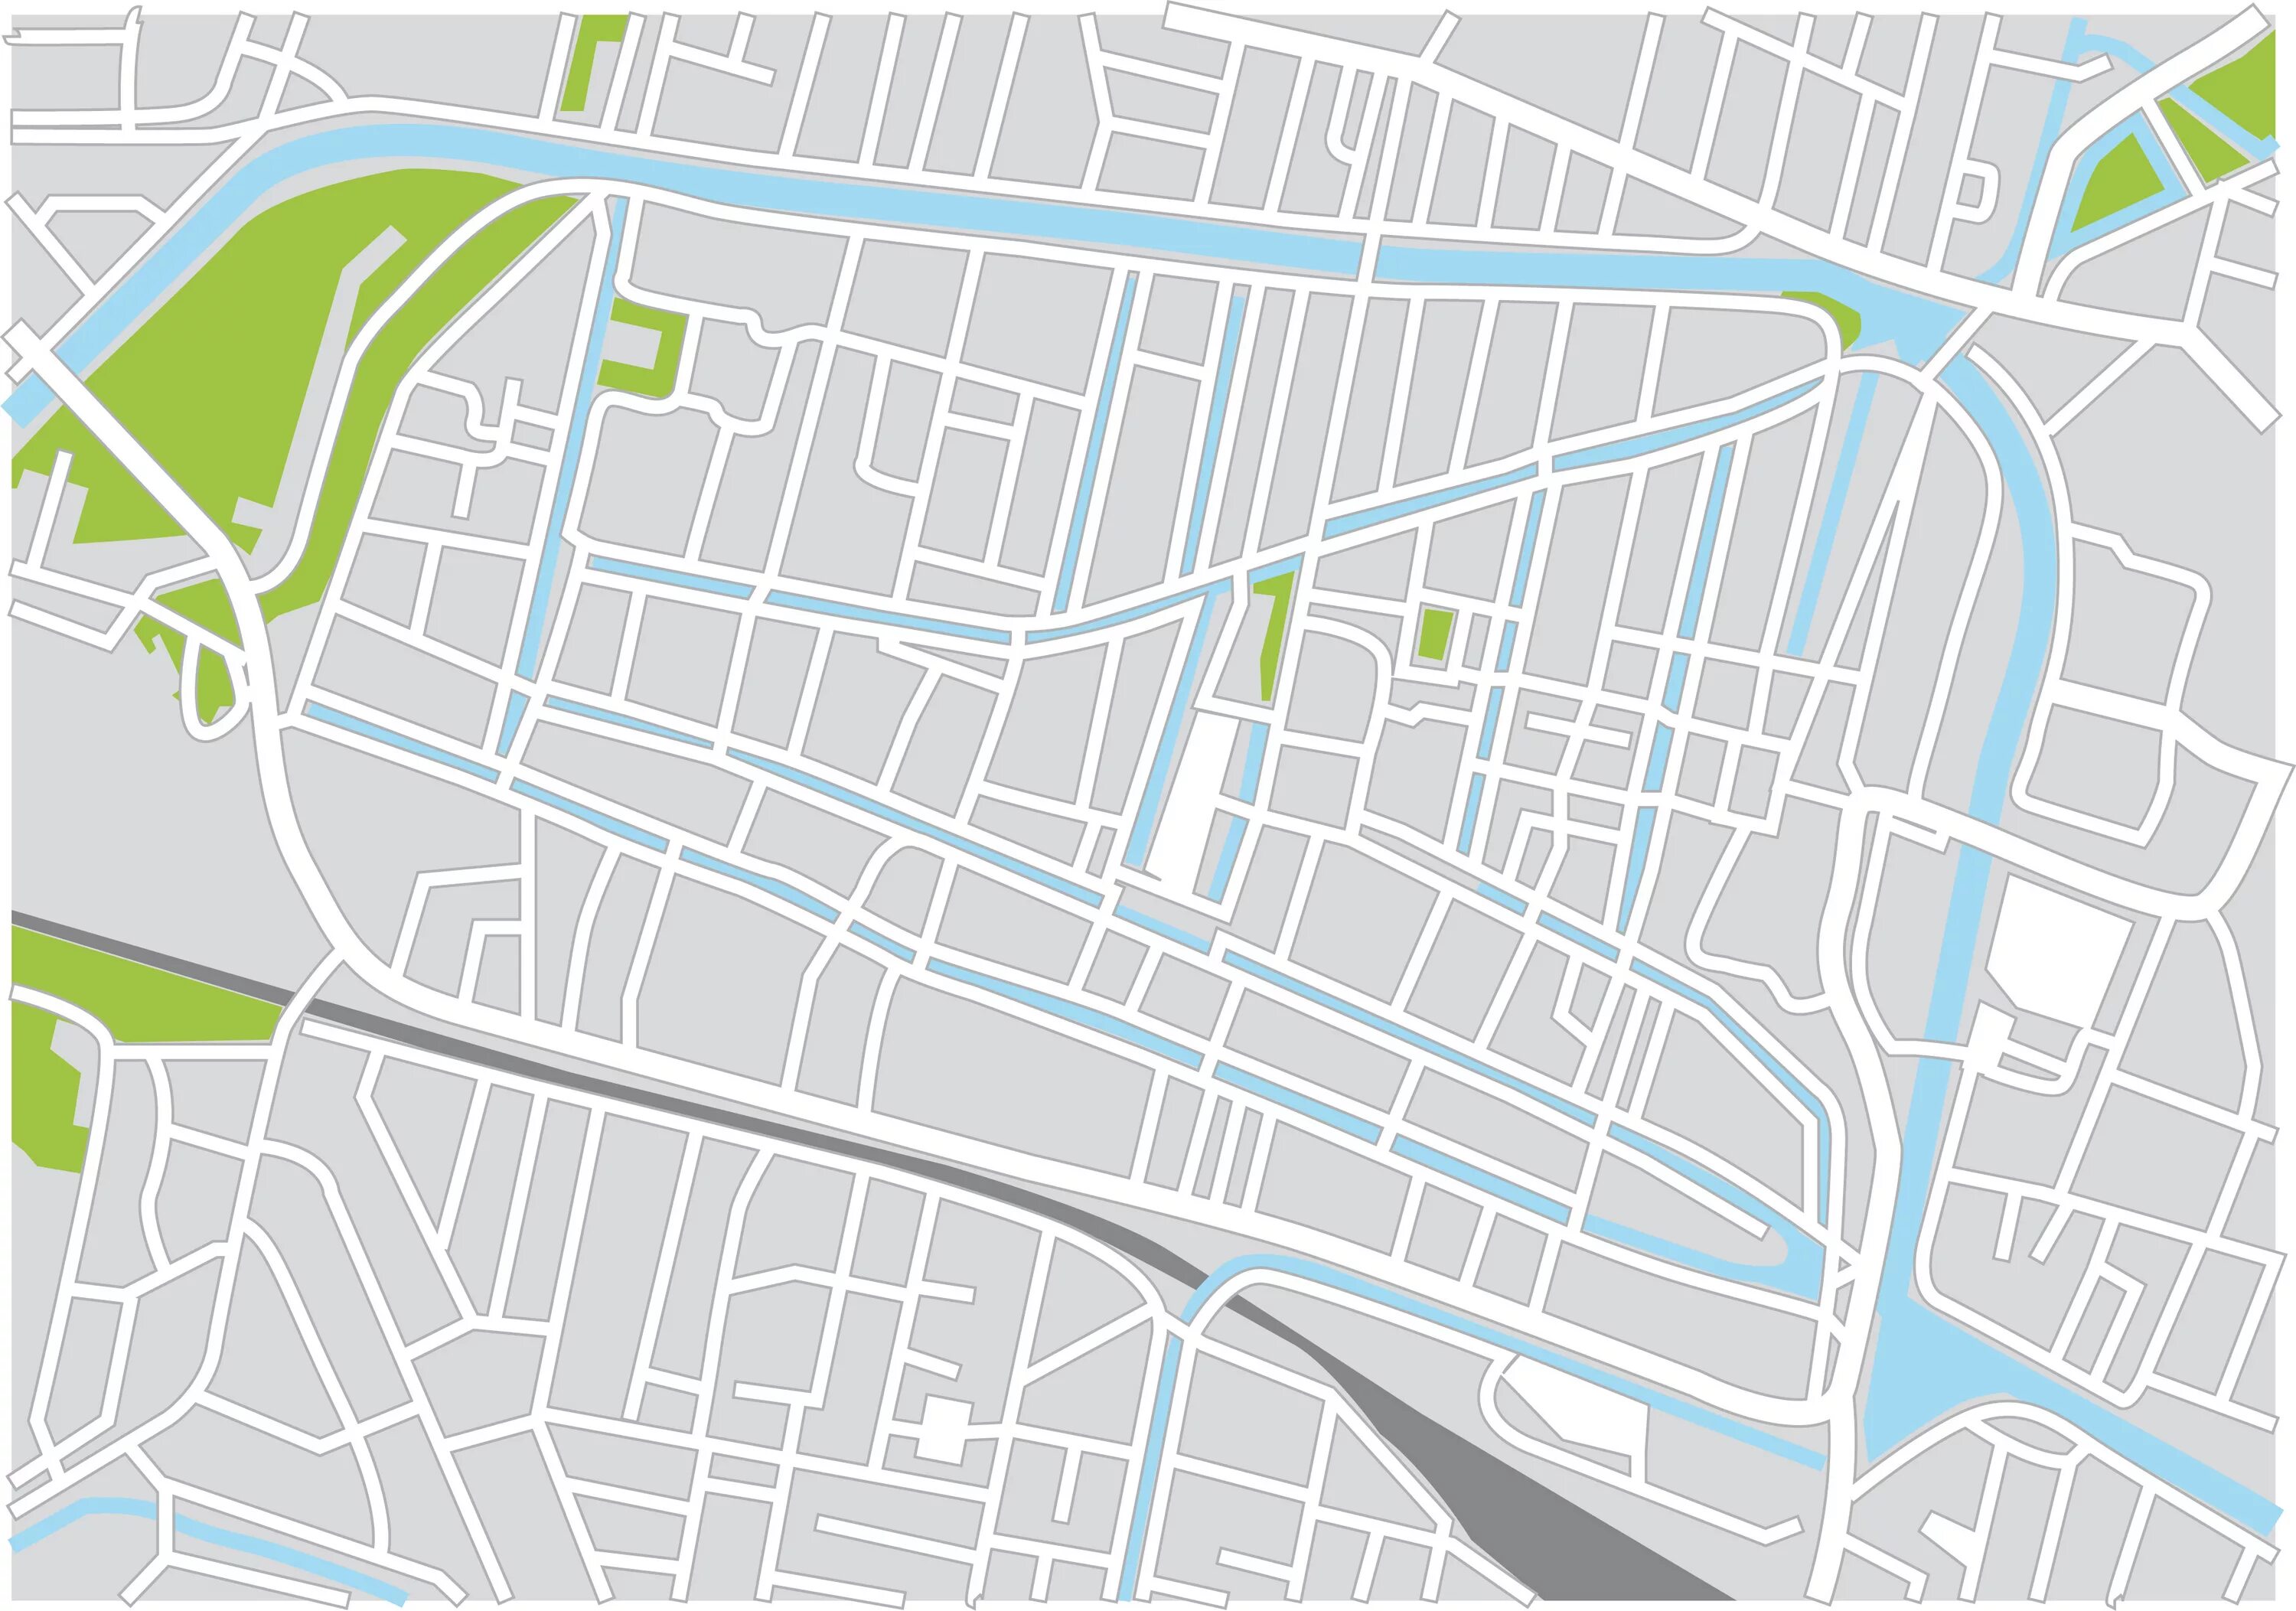 Http www maps. Карта города. Карта города вектор. Карта города без названий улиц. План города вектор.